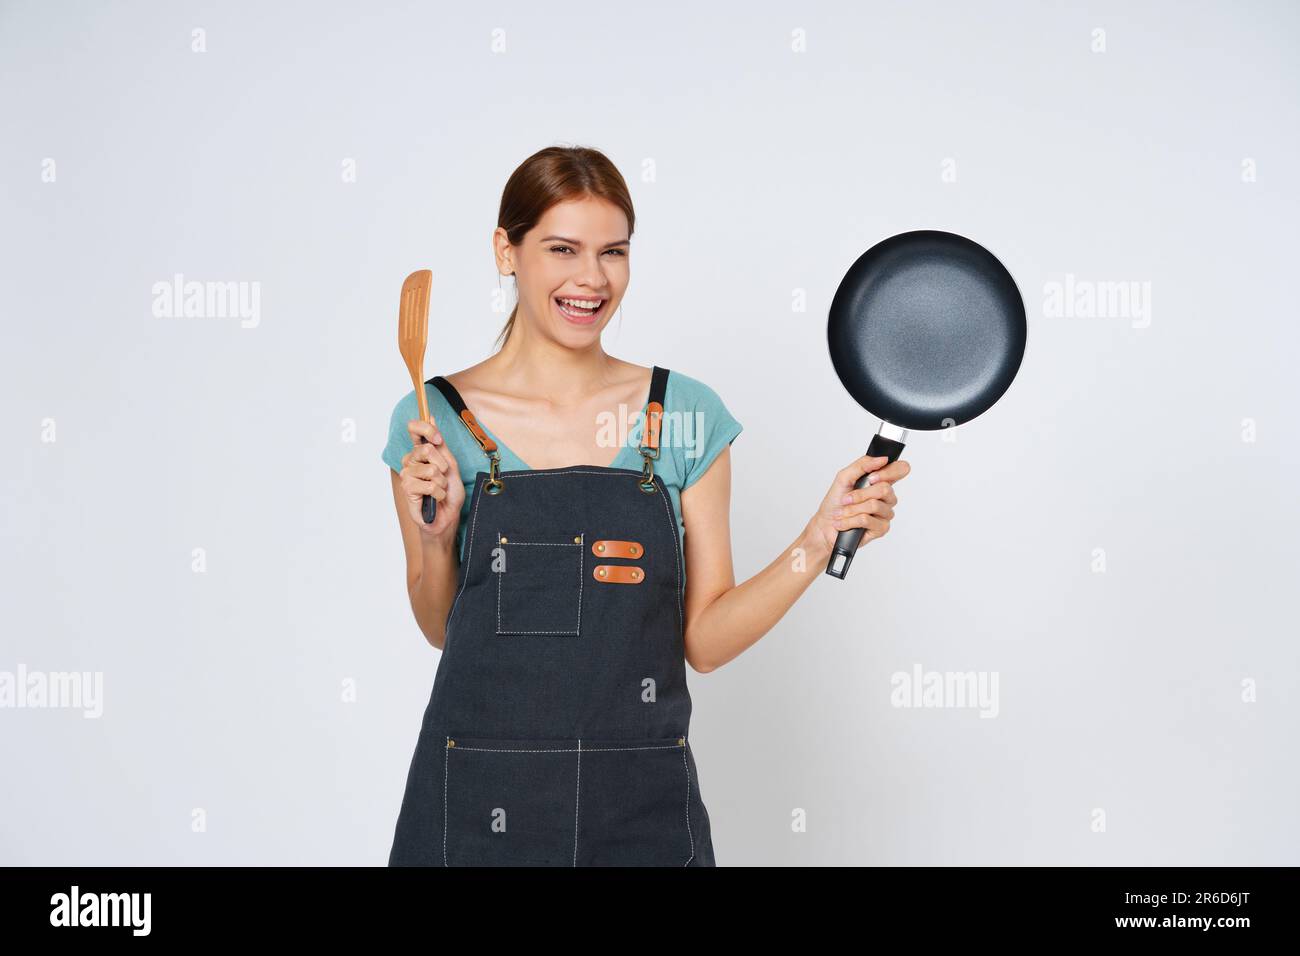 Jeune femme portant un tablier de cuisine avec un récipient et une spatule isolés sur fond blanc. Banque D'Images